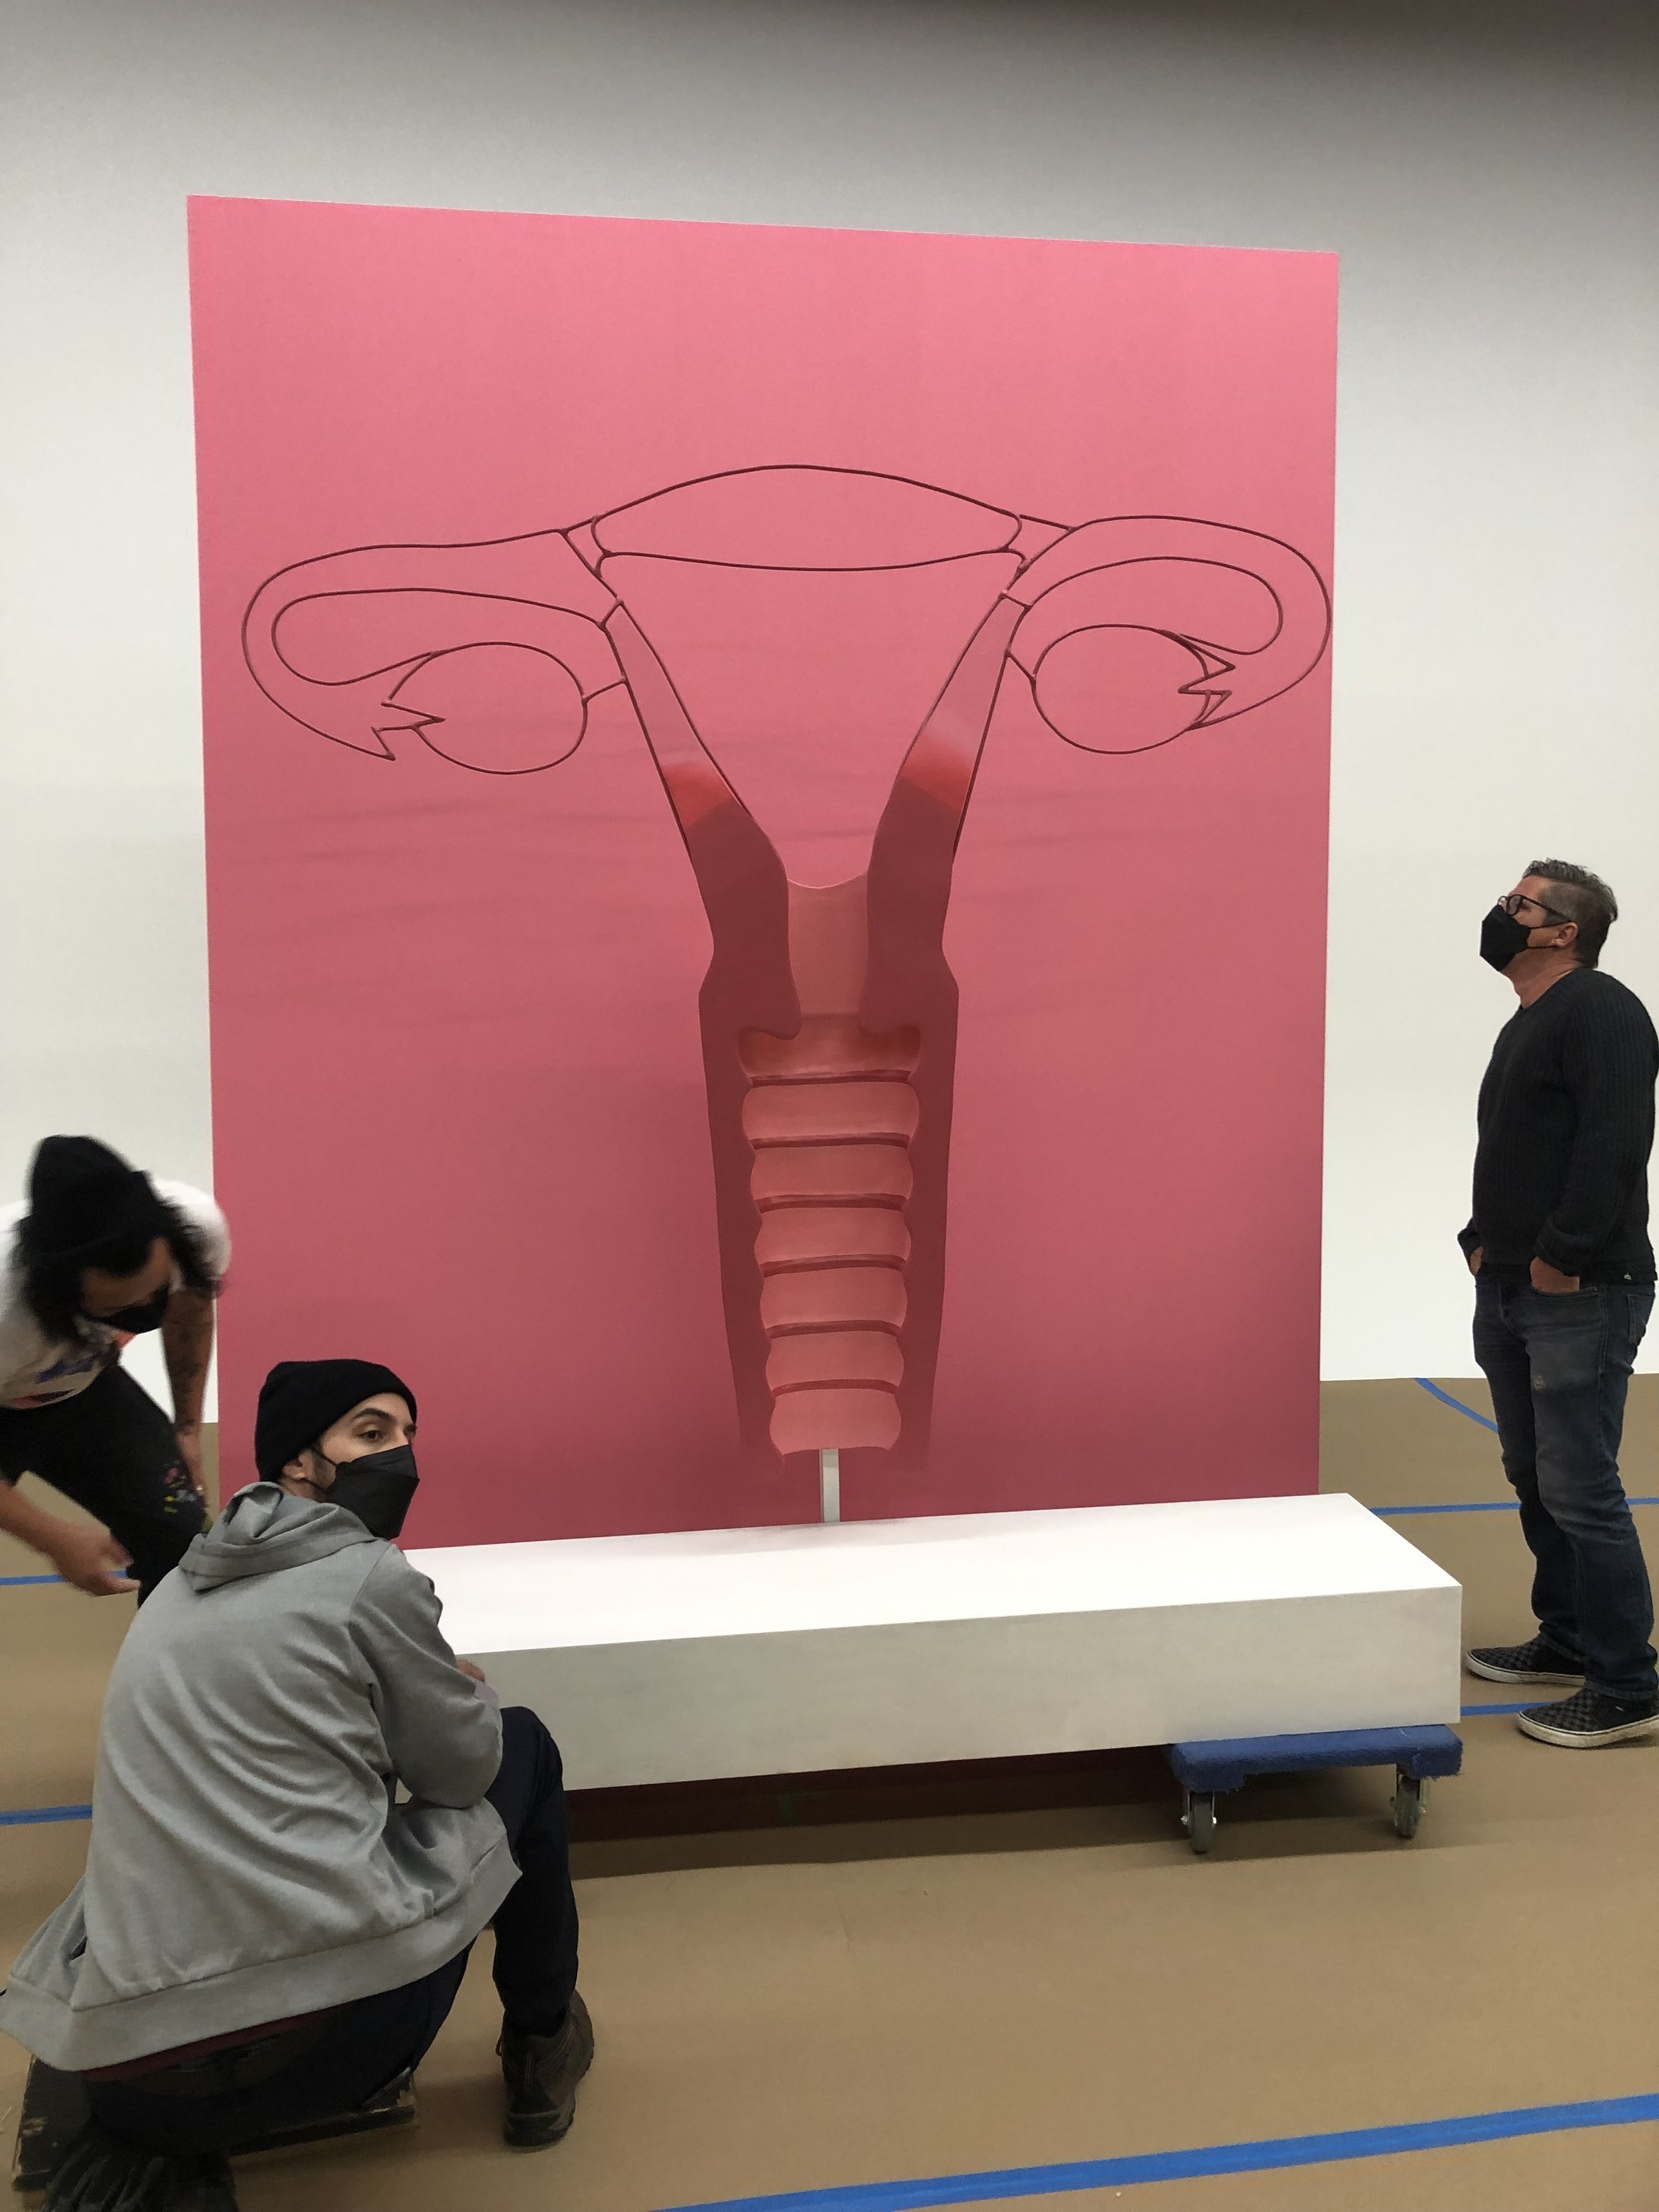 giant uterus sculpture